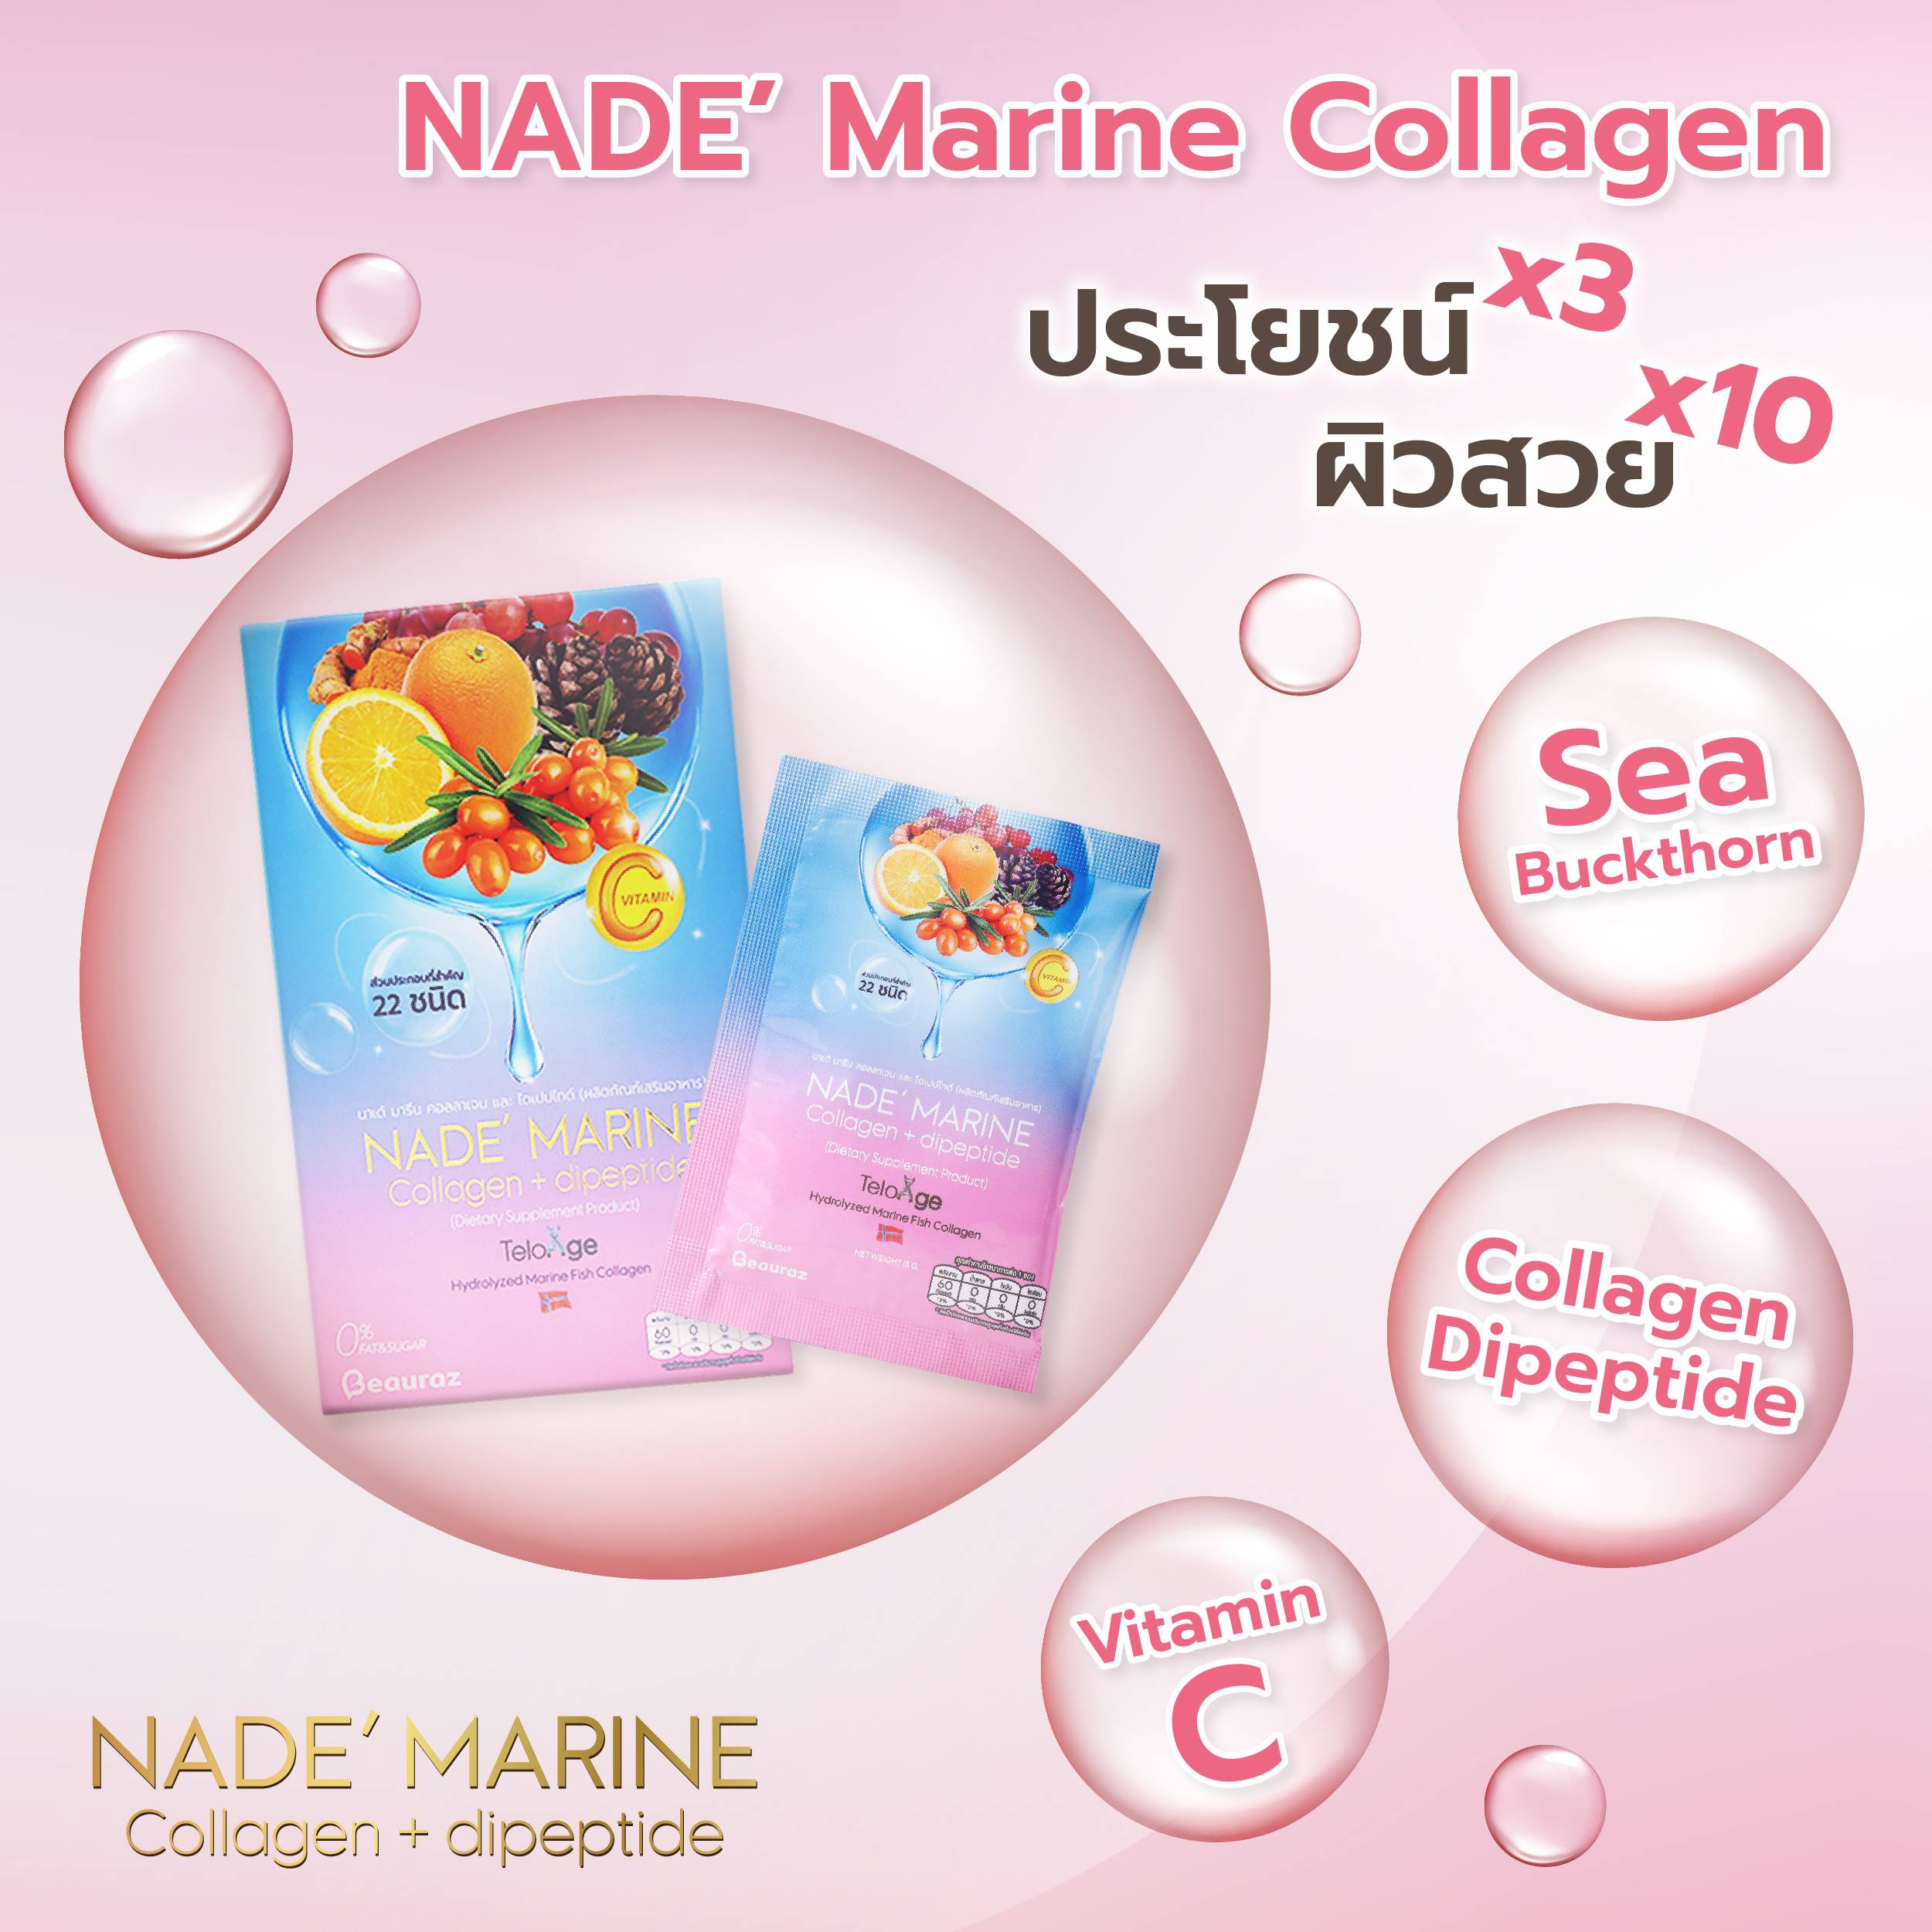 NADE' Marine Collagen